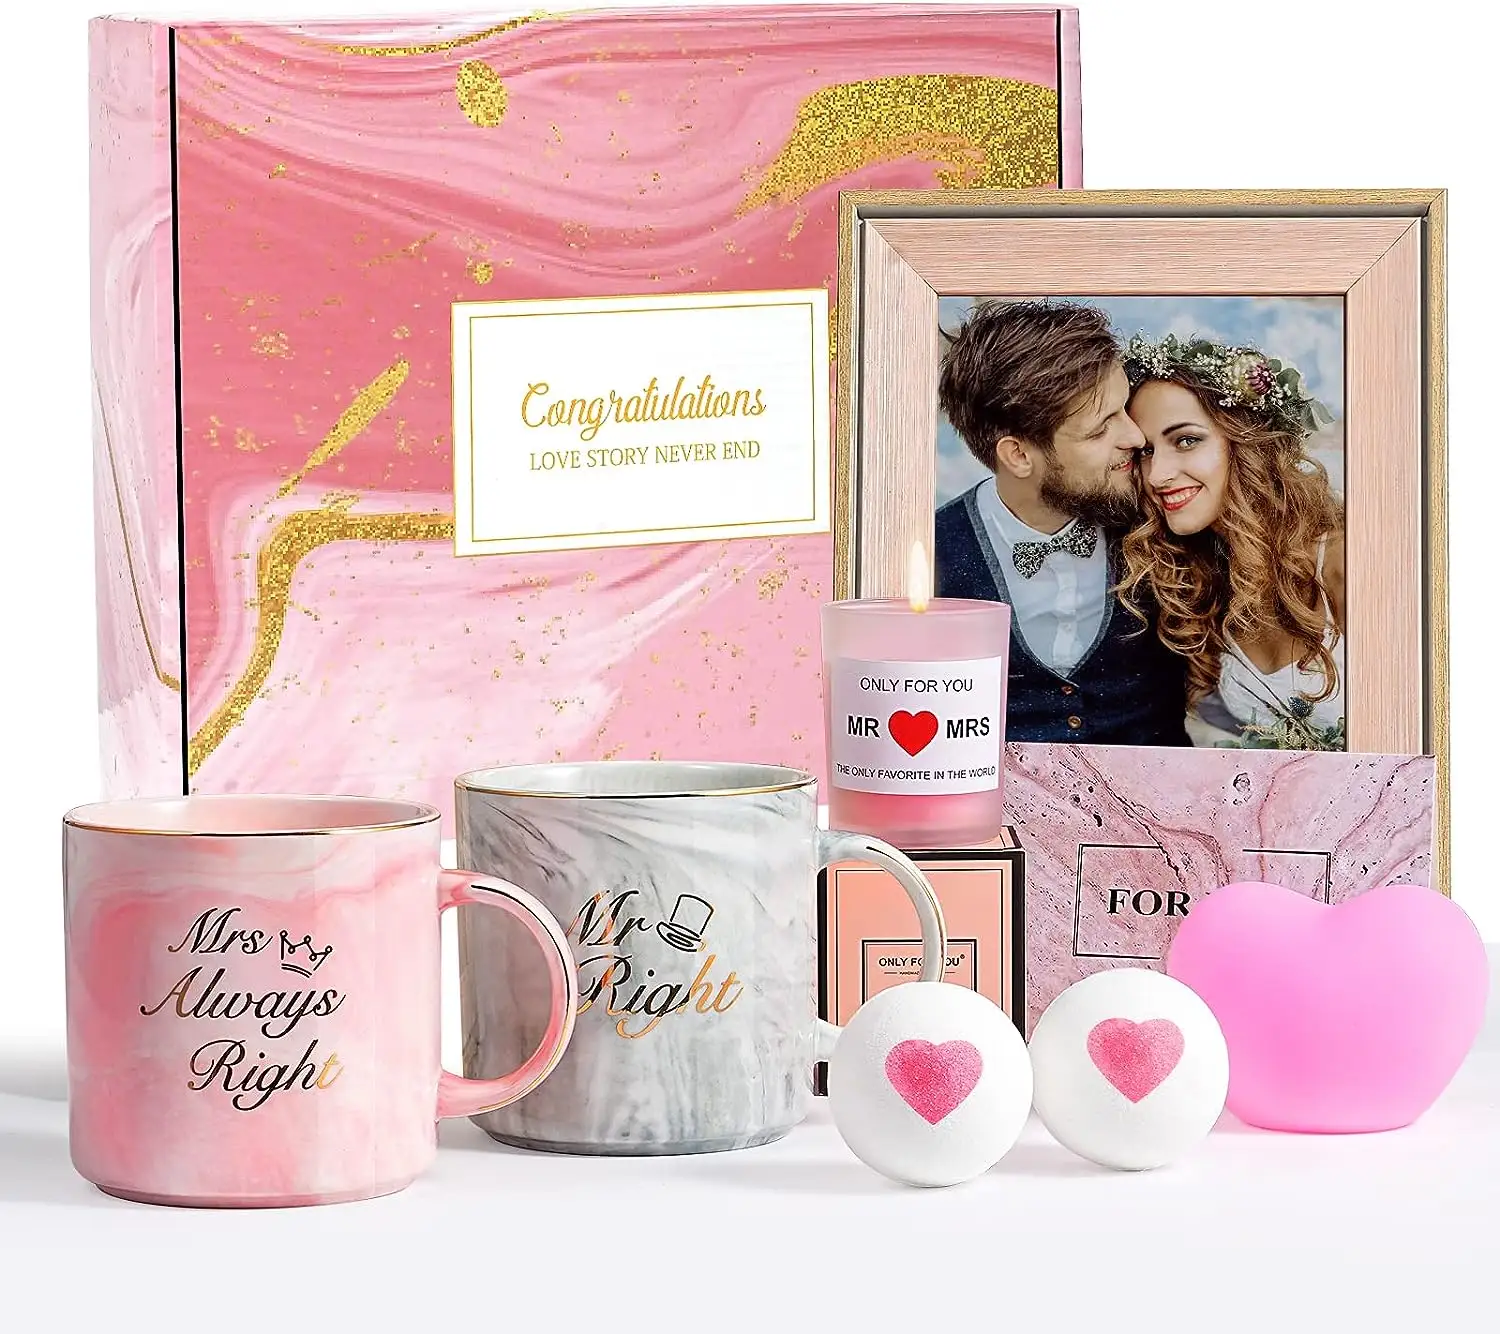 Hadiah pengantin baru untuk pernikahan pengantin dengan lilin wangi bom mandi bingkai foto pabrik tempat penjualan hadiah pertunangan untuk pasangan